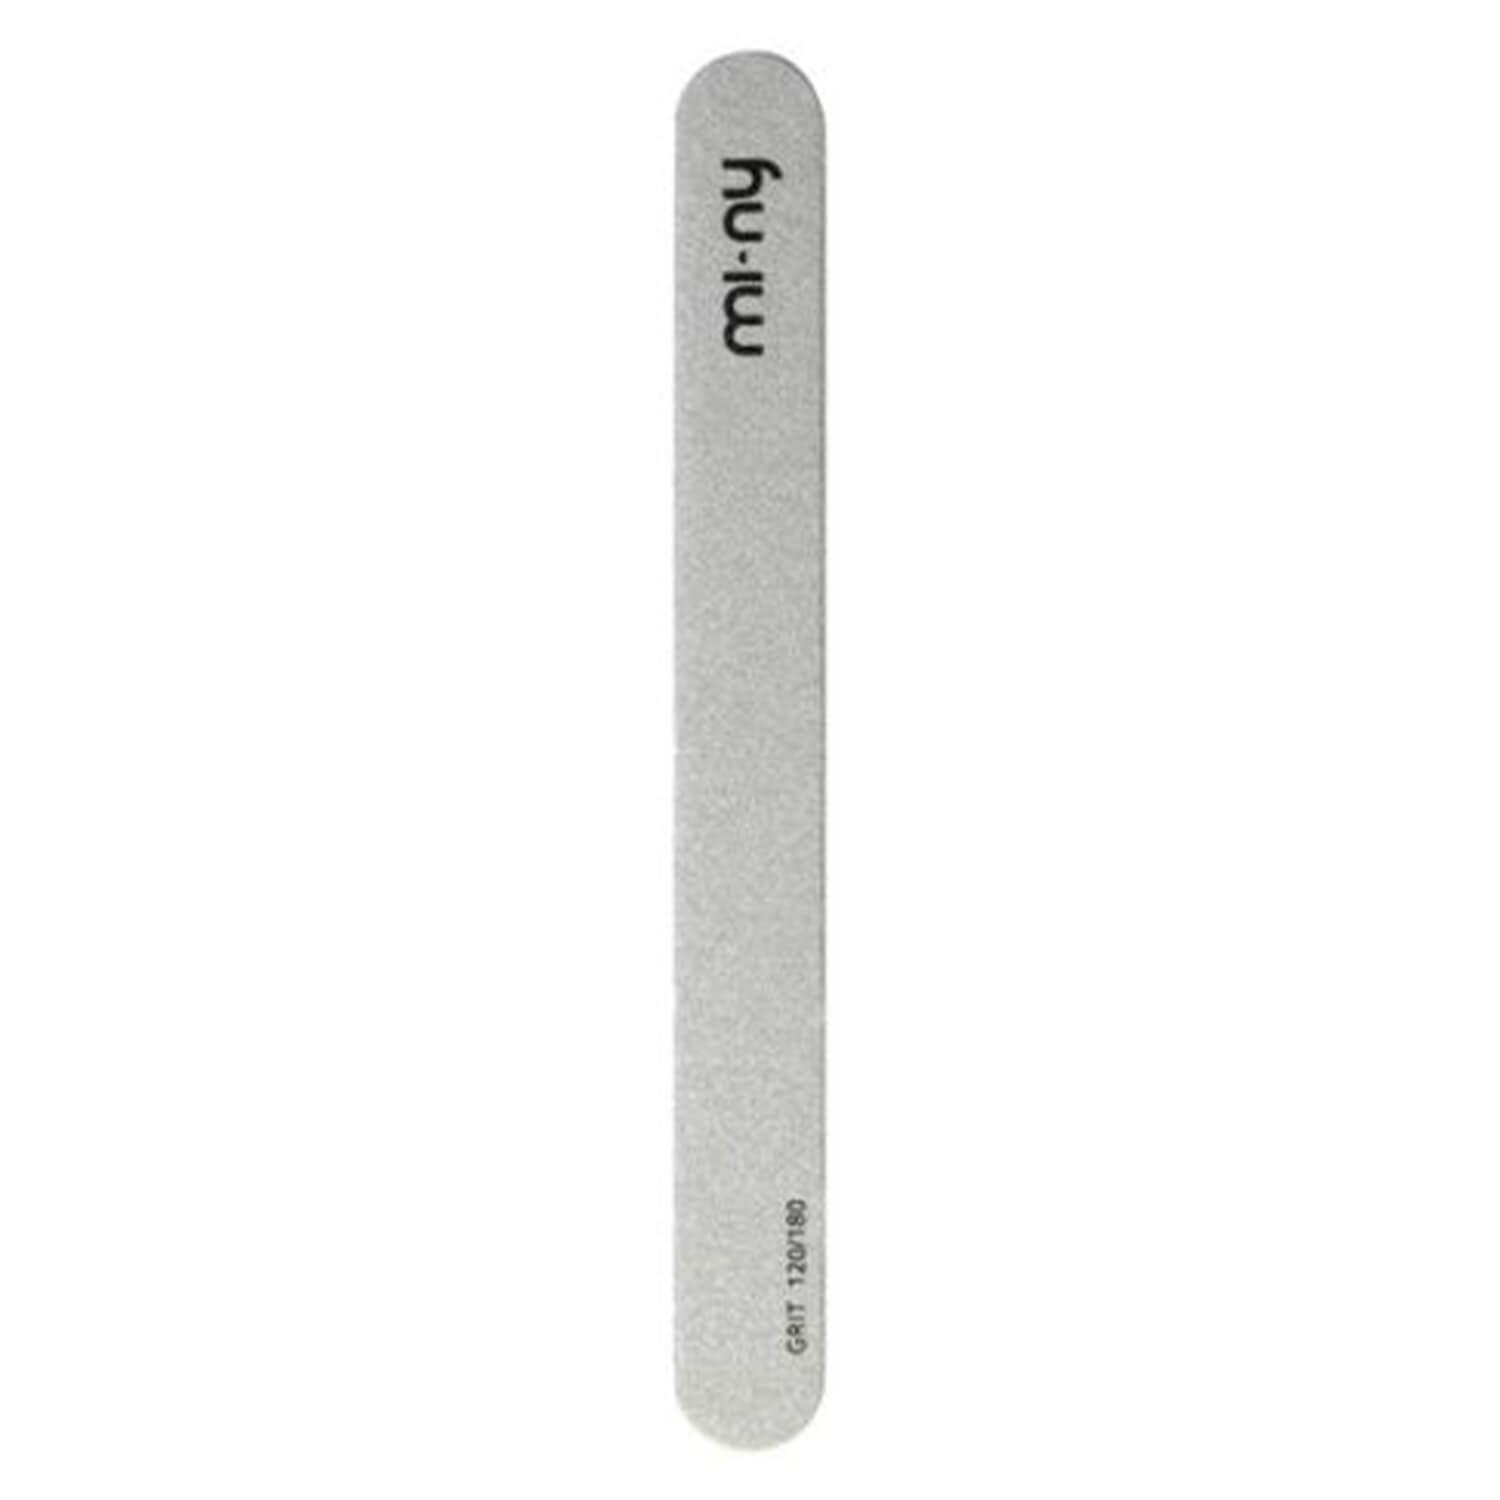 mi-ny Accessories - Nail File Silver